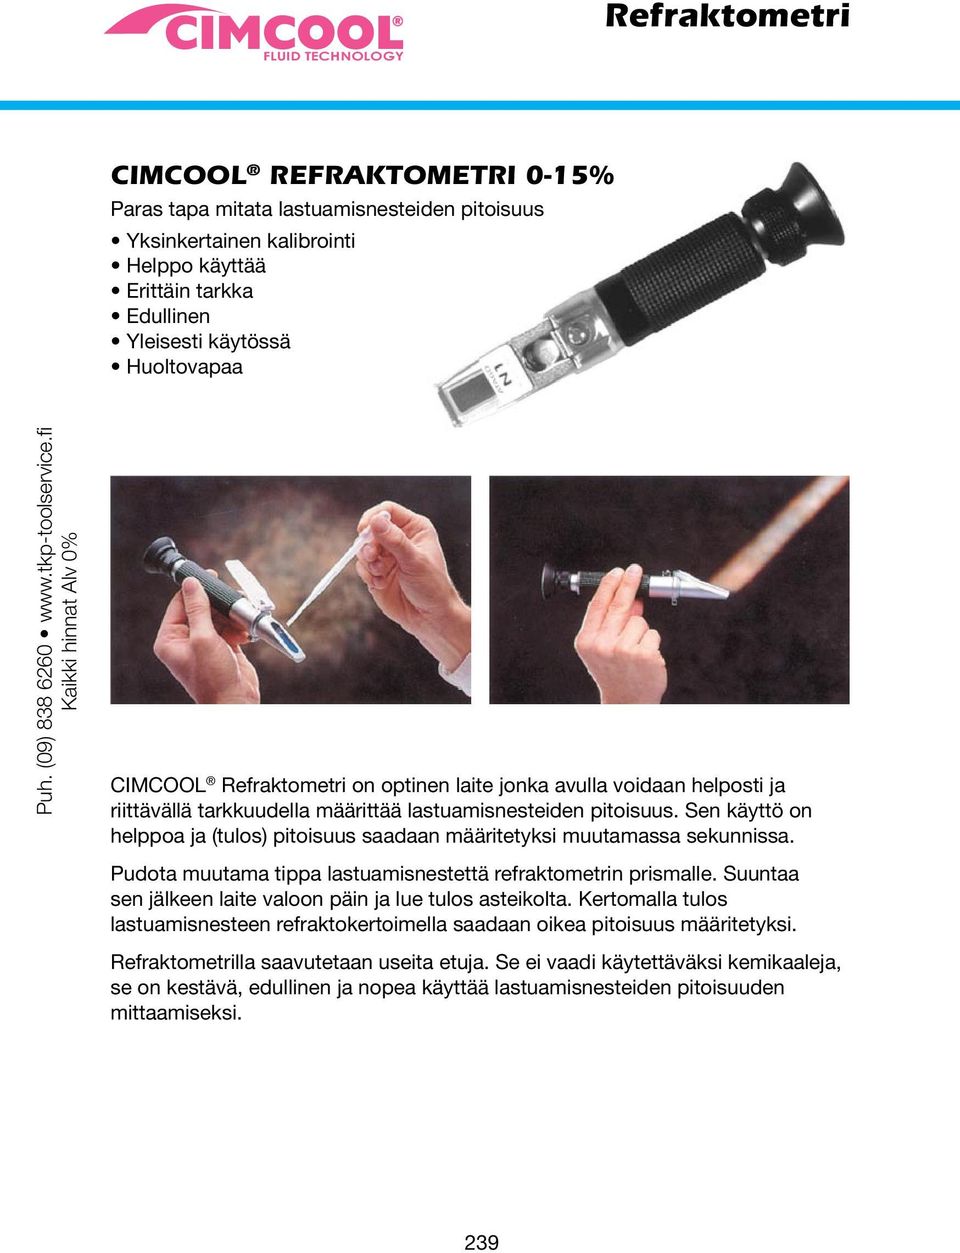 fi Kaikki hinnat Alv 0% CIMCOOL Refraktometri on optinen laite jonka avulla voidaan helposti ja riittävällä tarkkuudella määrittää lastuamisnesteiden pitoisuus.